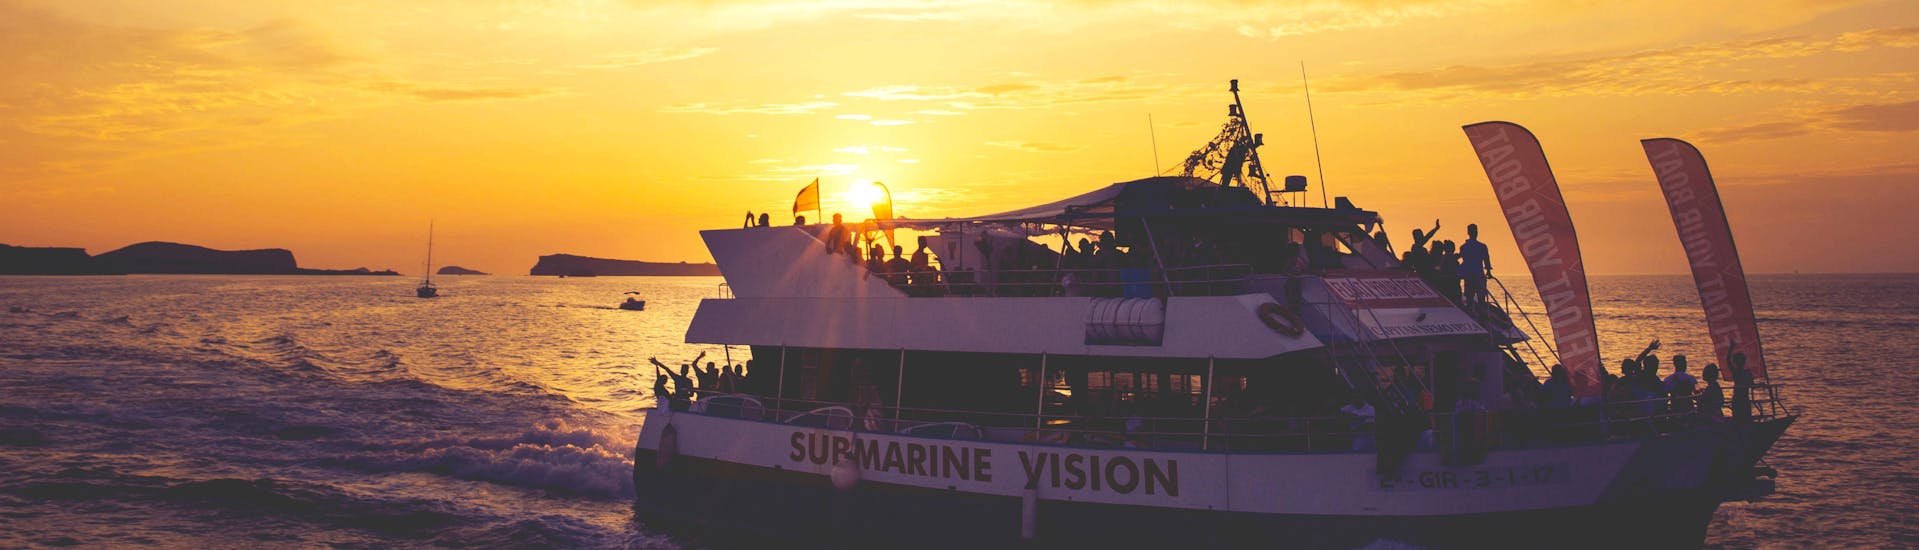 Beach Hopping auf Ibiza mit Schnorcheln bei Sonnenuntergang mit Ibiza Boat Cruises.